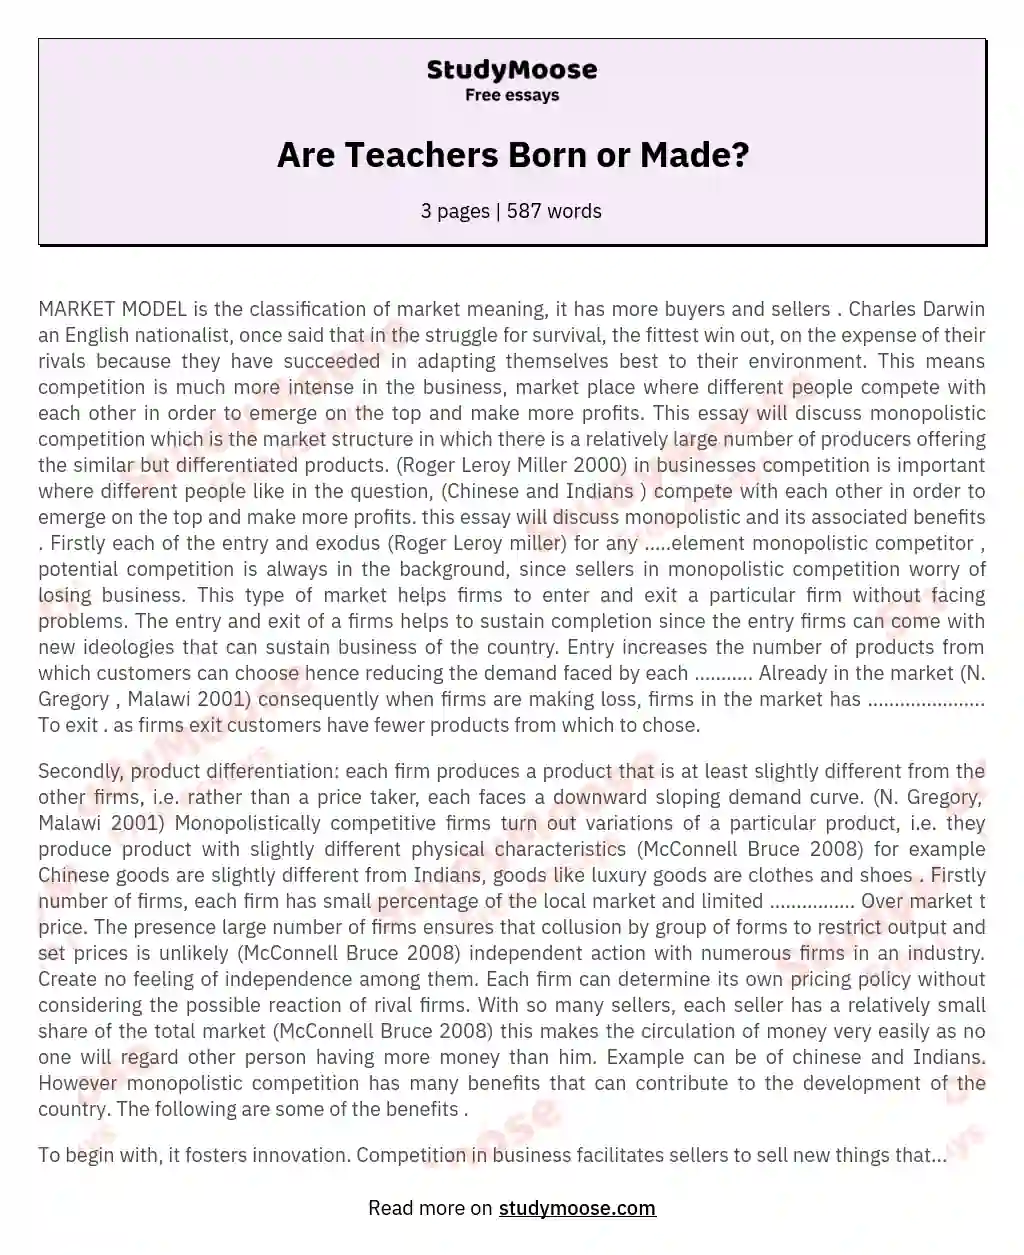 are good teachers born or made essay